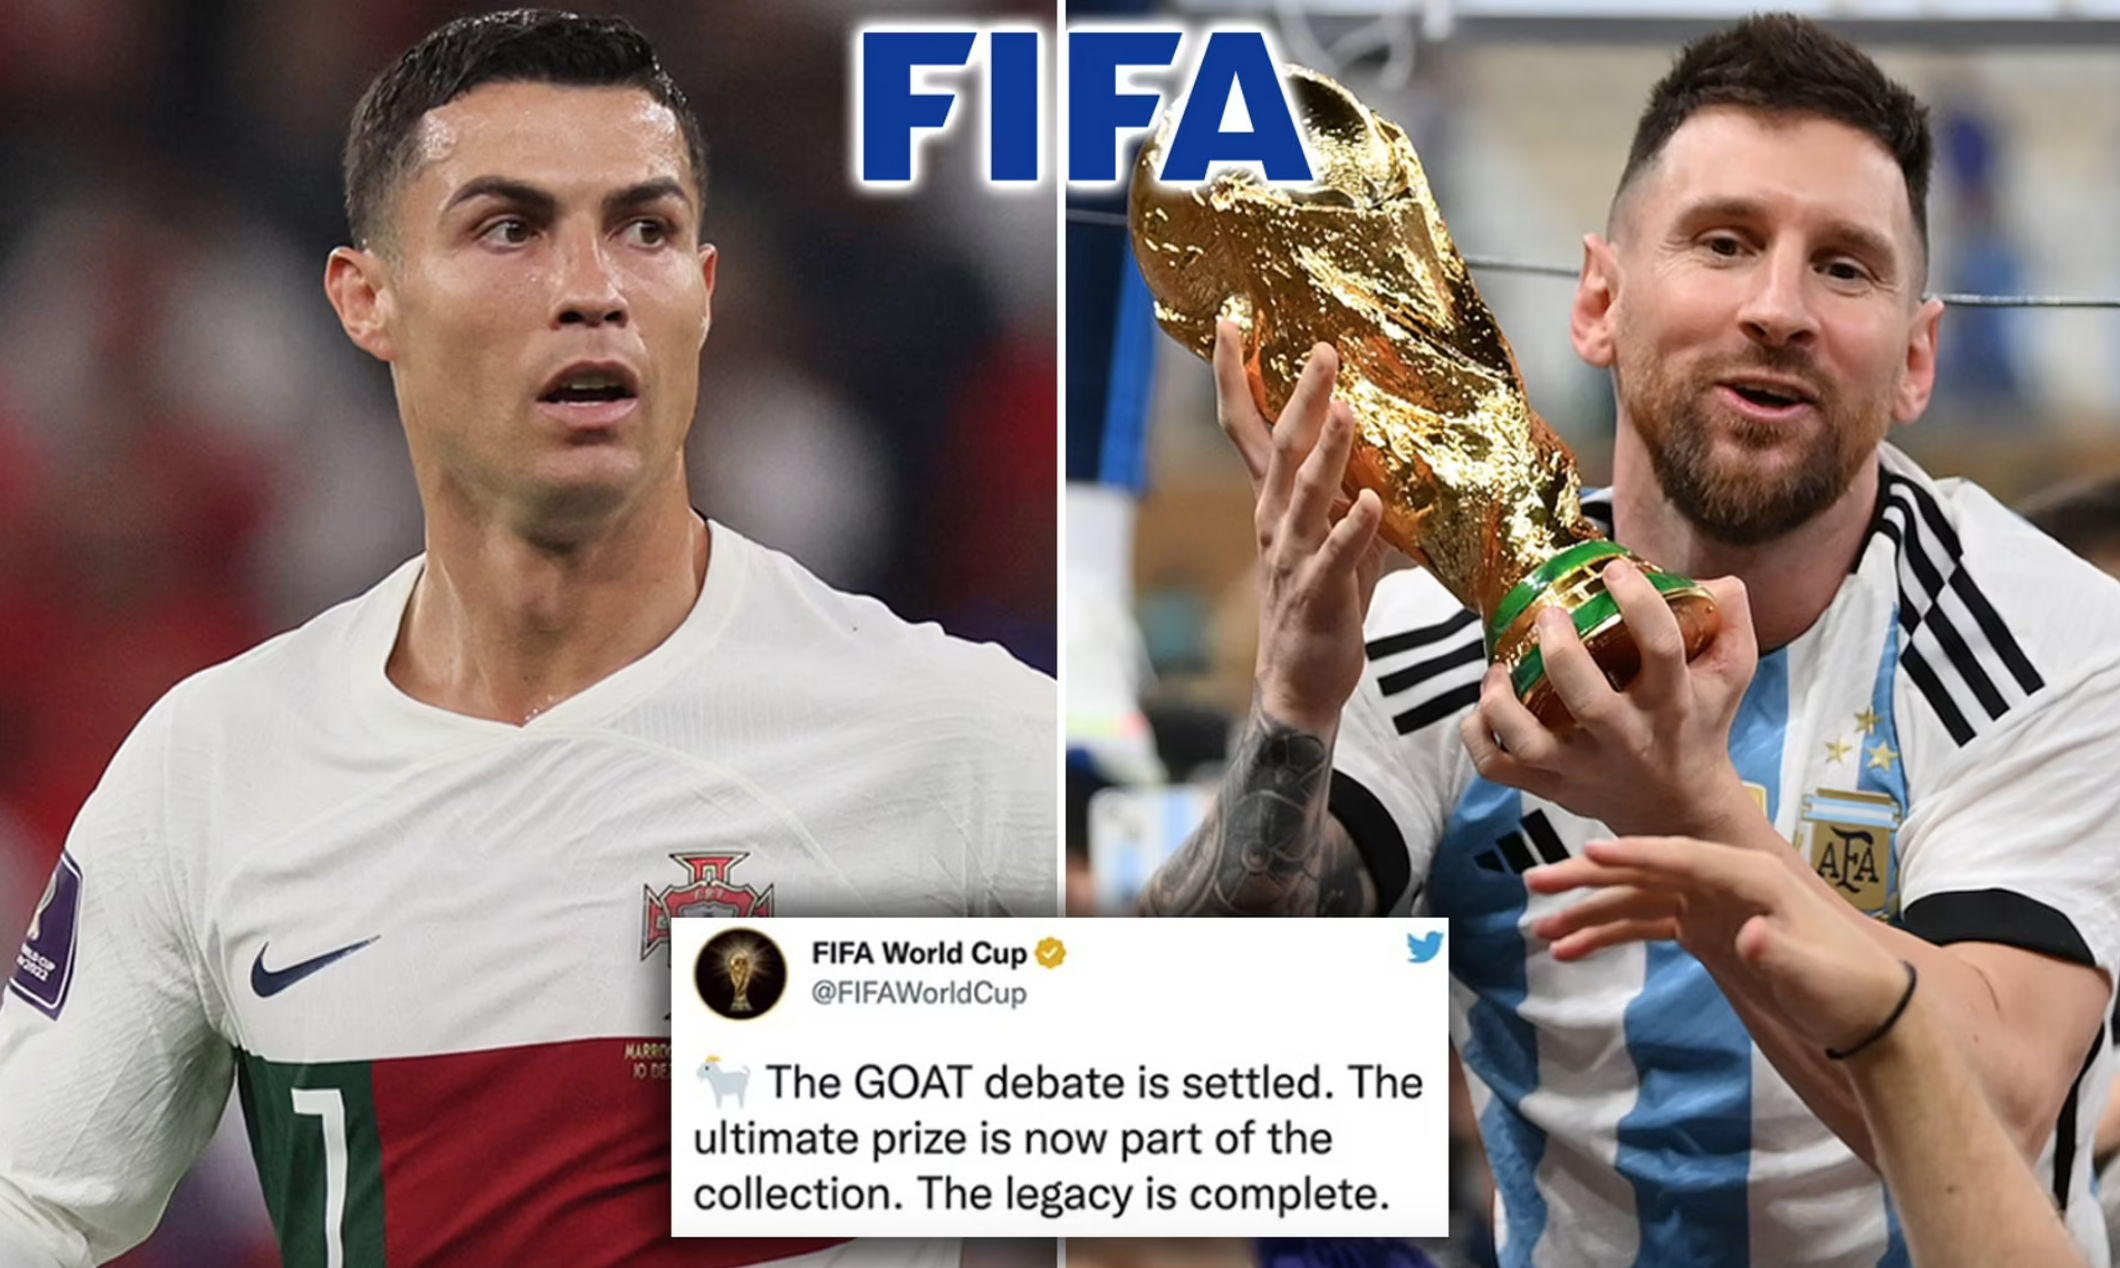 Dòng trạng thái của FIFA khẳng định Messi là GOAT